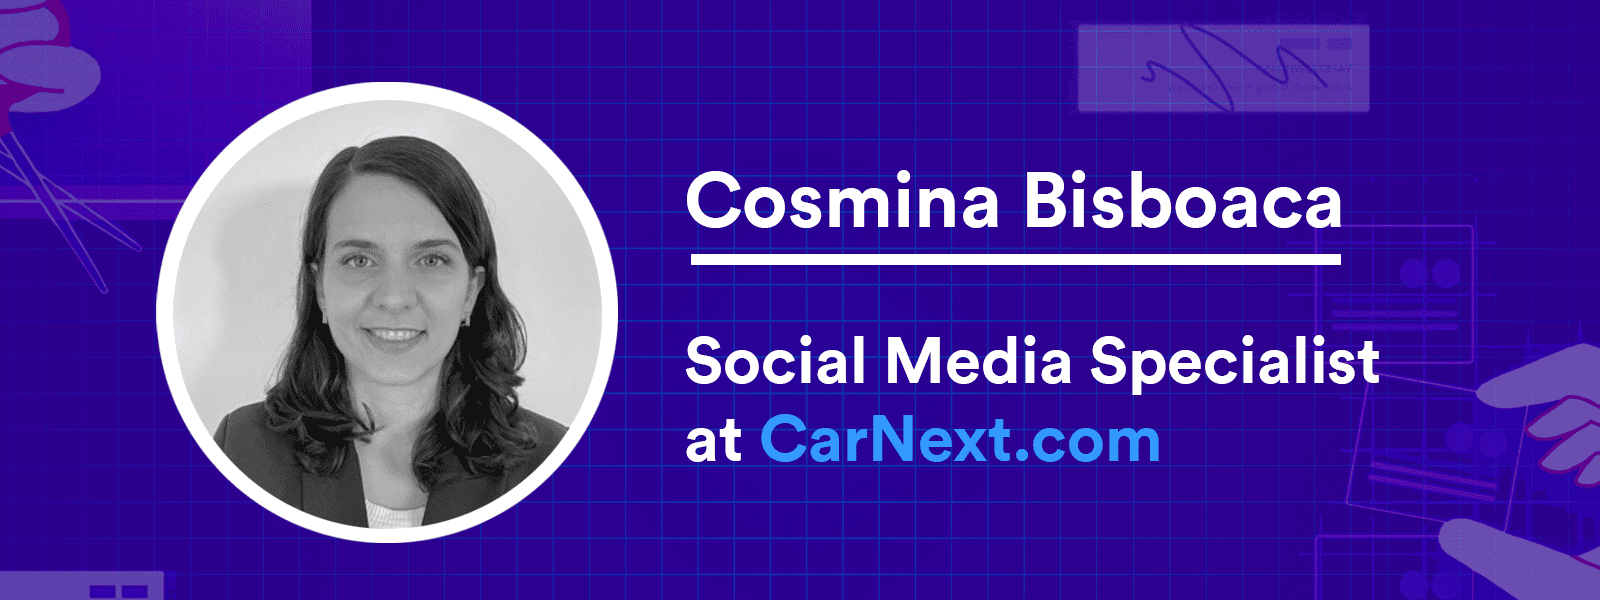 Cosmina Bisboaca, Social Media Specialist at CarNext.com